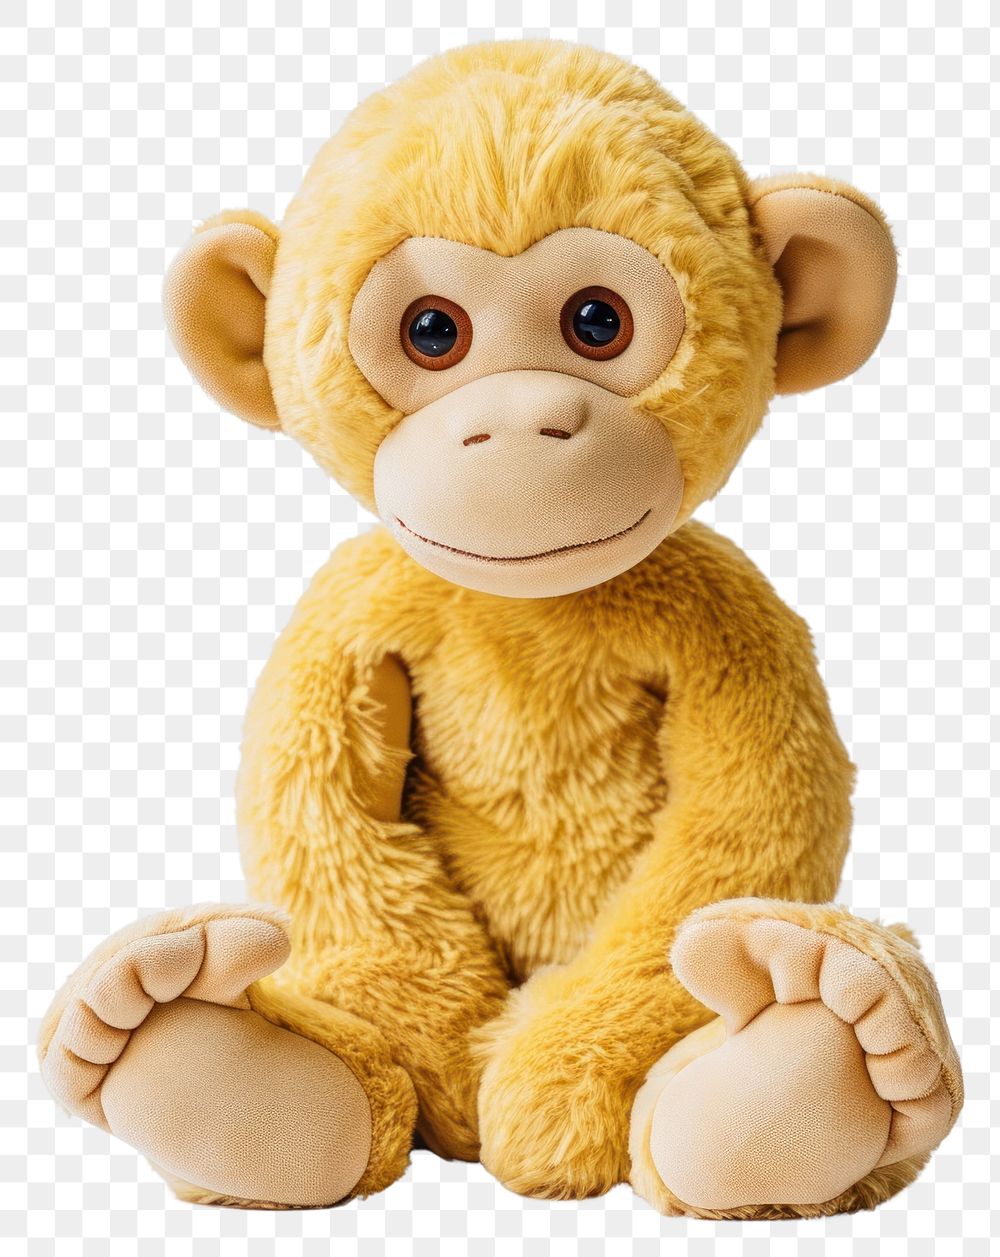 PNG Stuffed doll monkey plush cute toy.